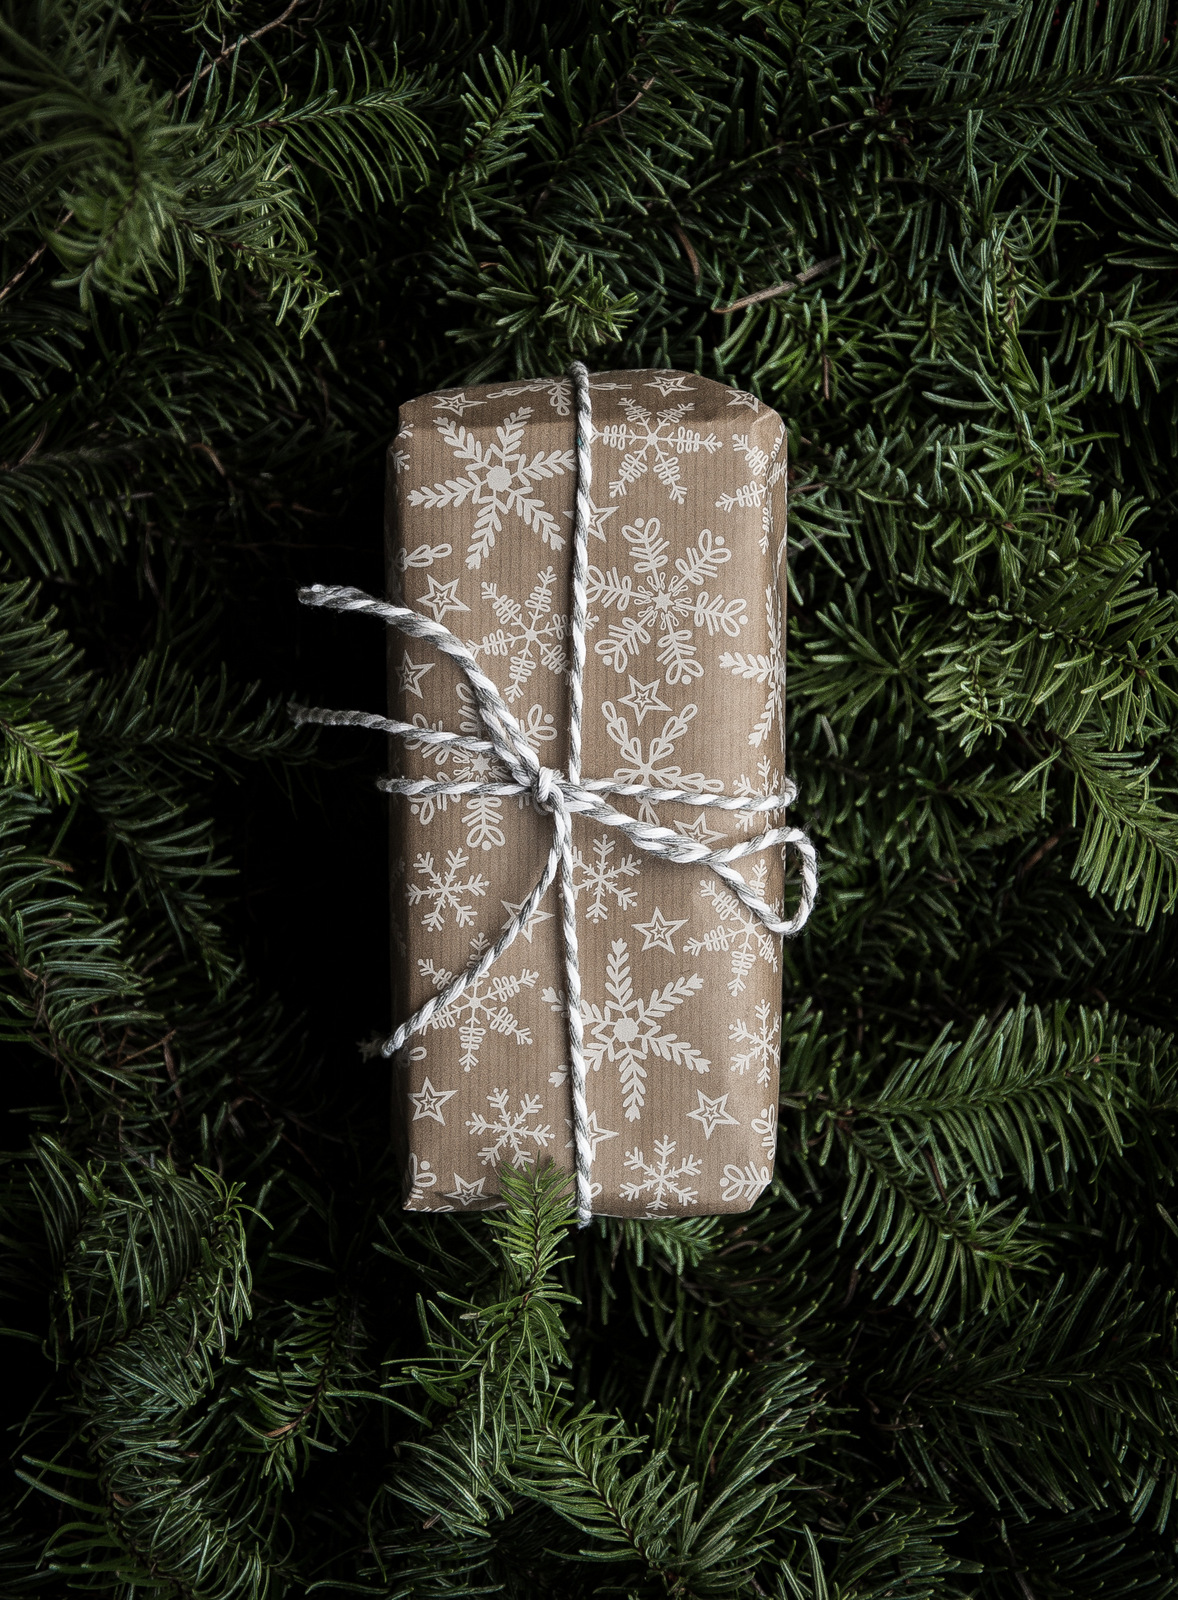 Gift Guide December 2018